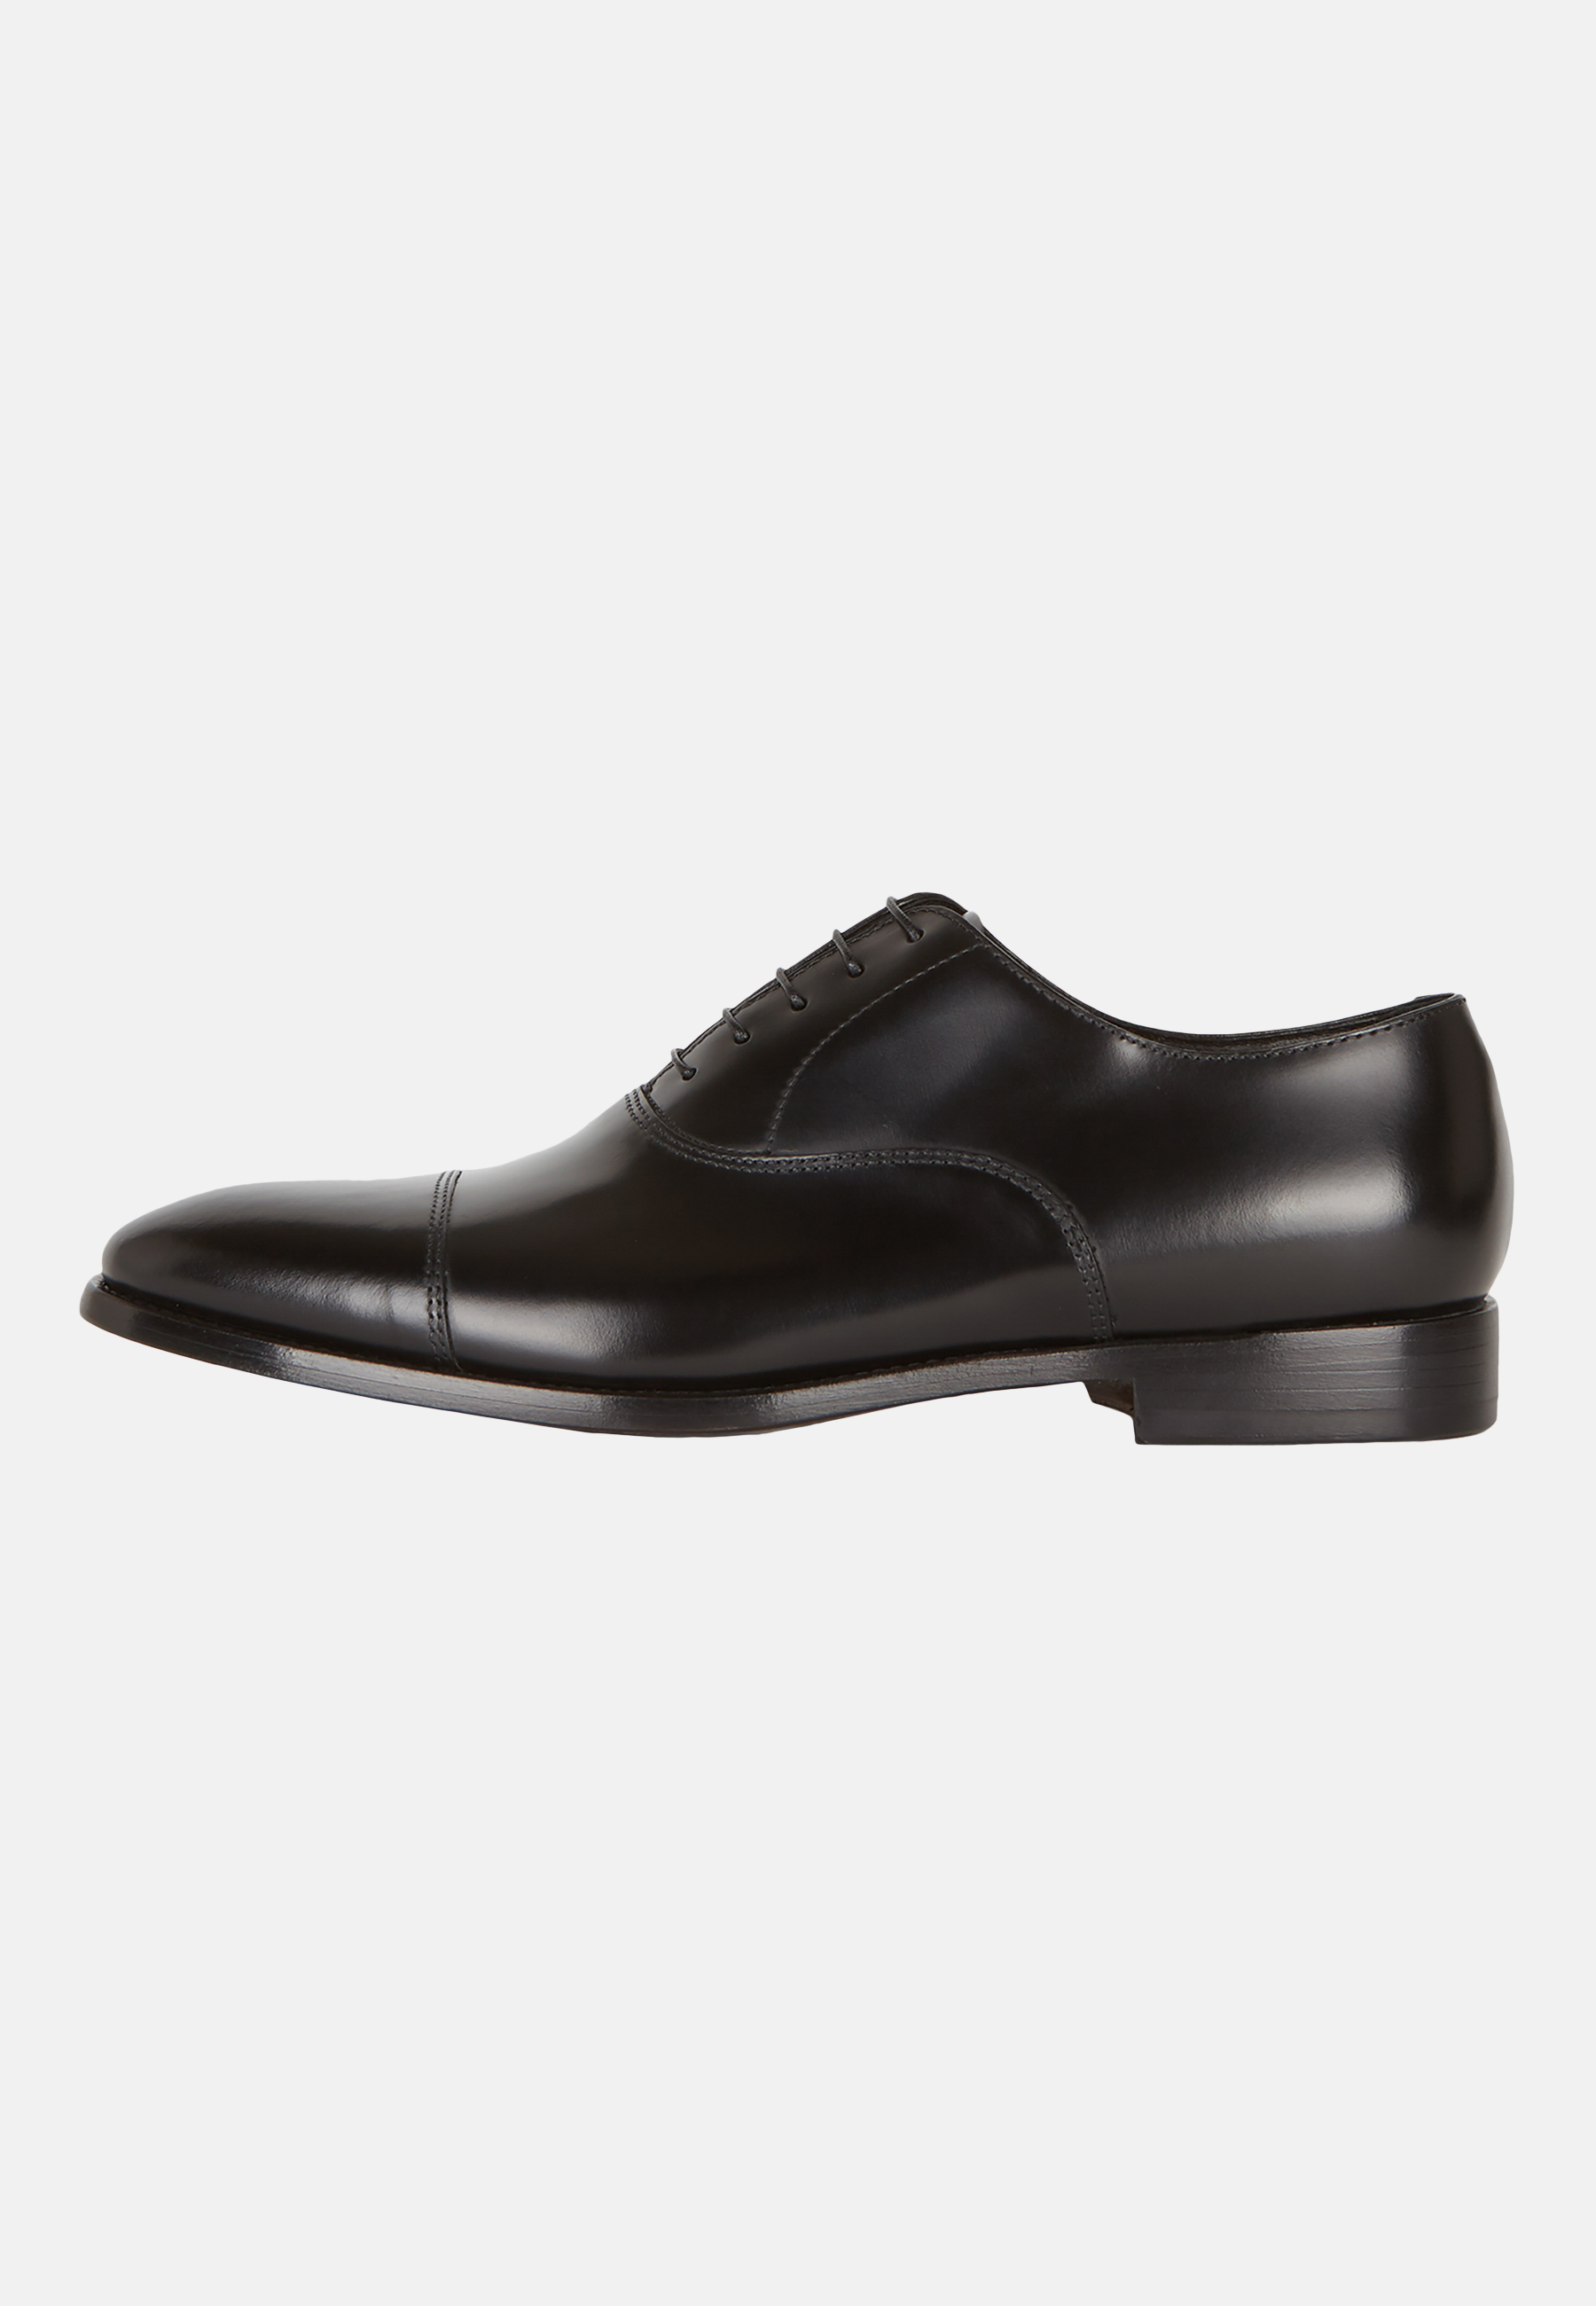 Une paire de chaussures pour homme 100% cuir, modèle Oxford, Patent ou  Gibson à 49,99€ (74% de réduction)